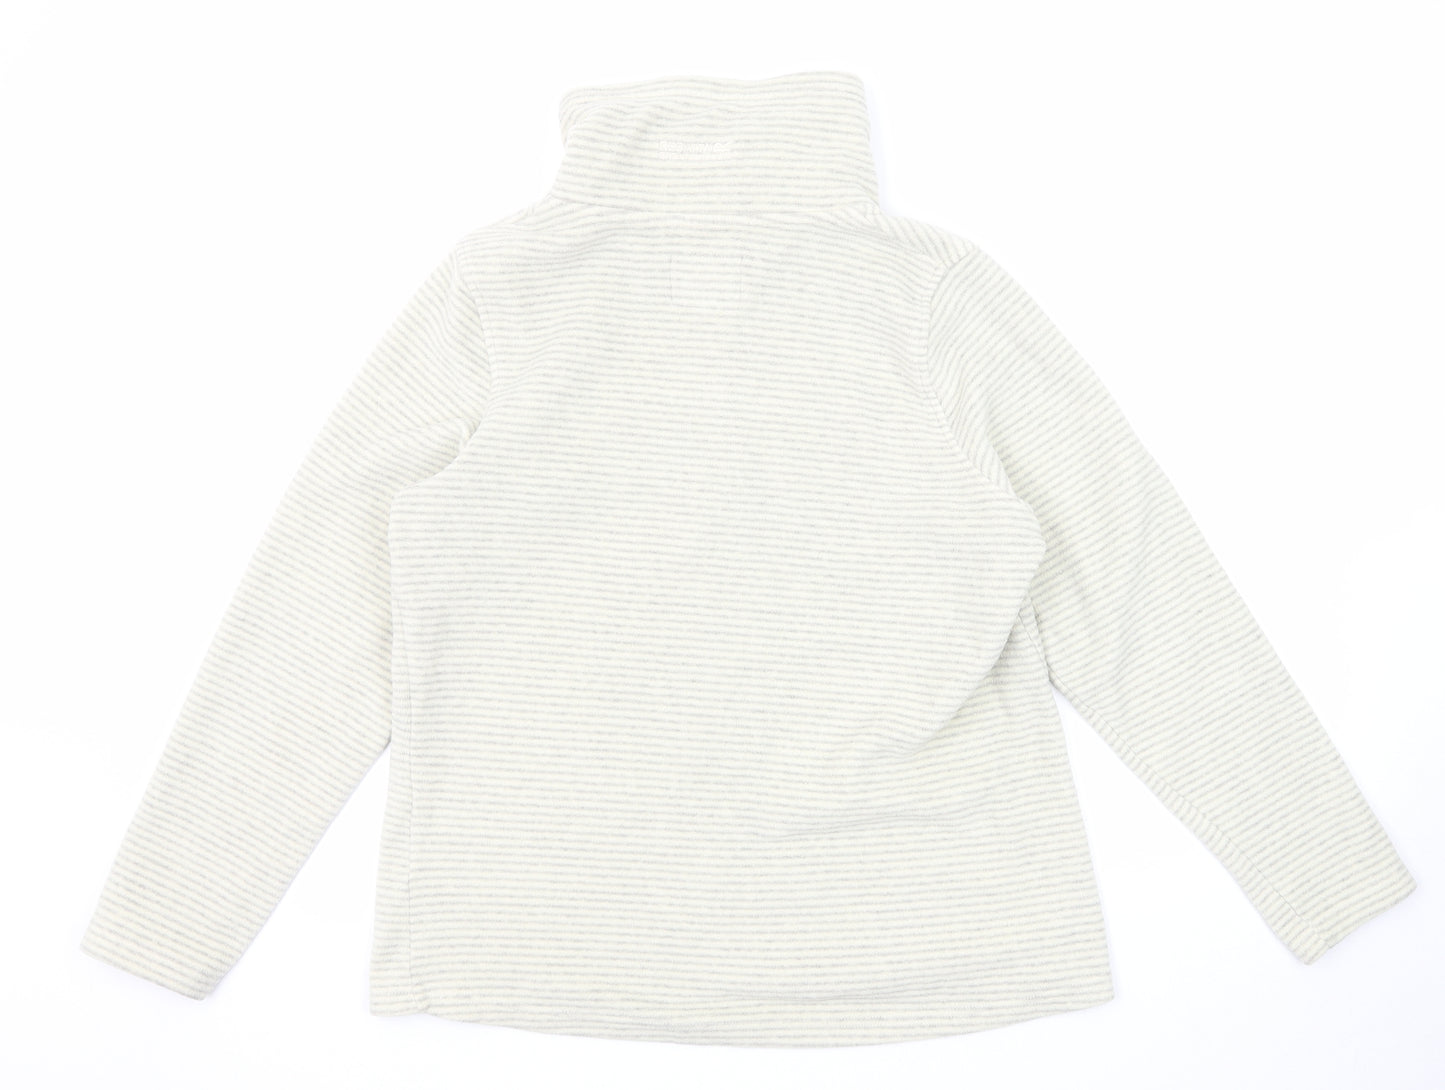 Regatta Womens Grey Striped Polyester Pullover Sweatshirt Size 16 Zip